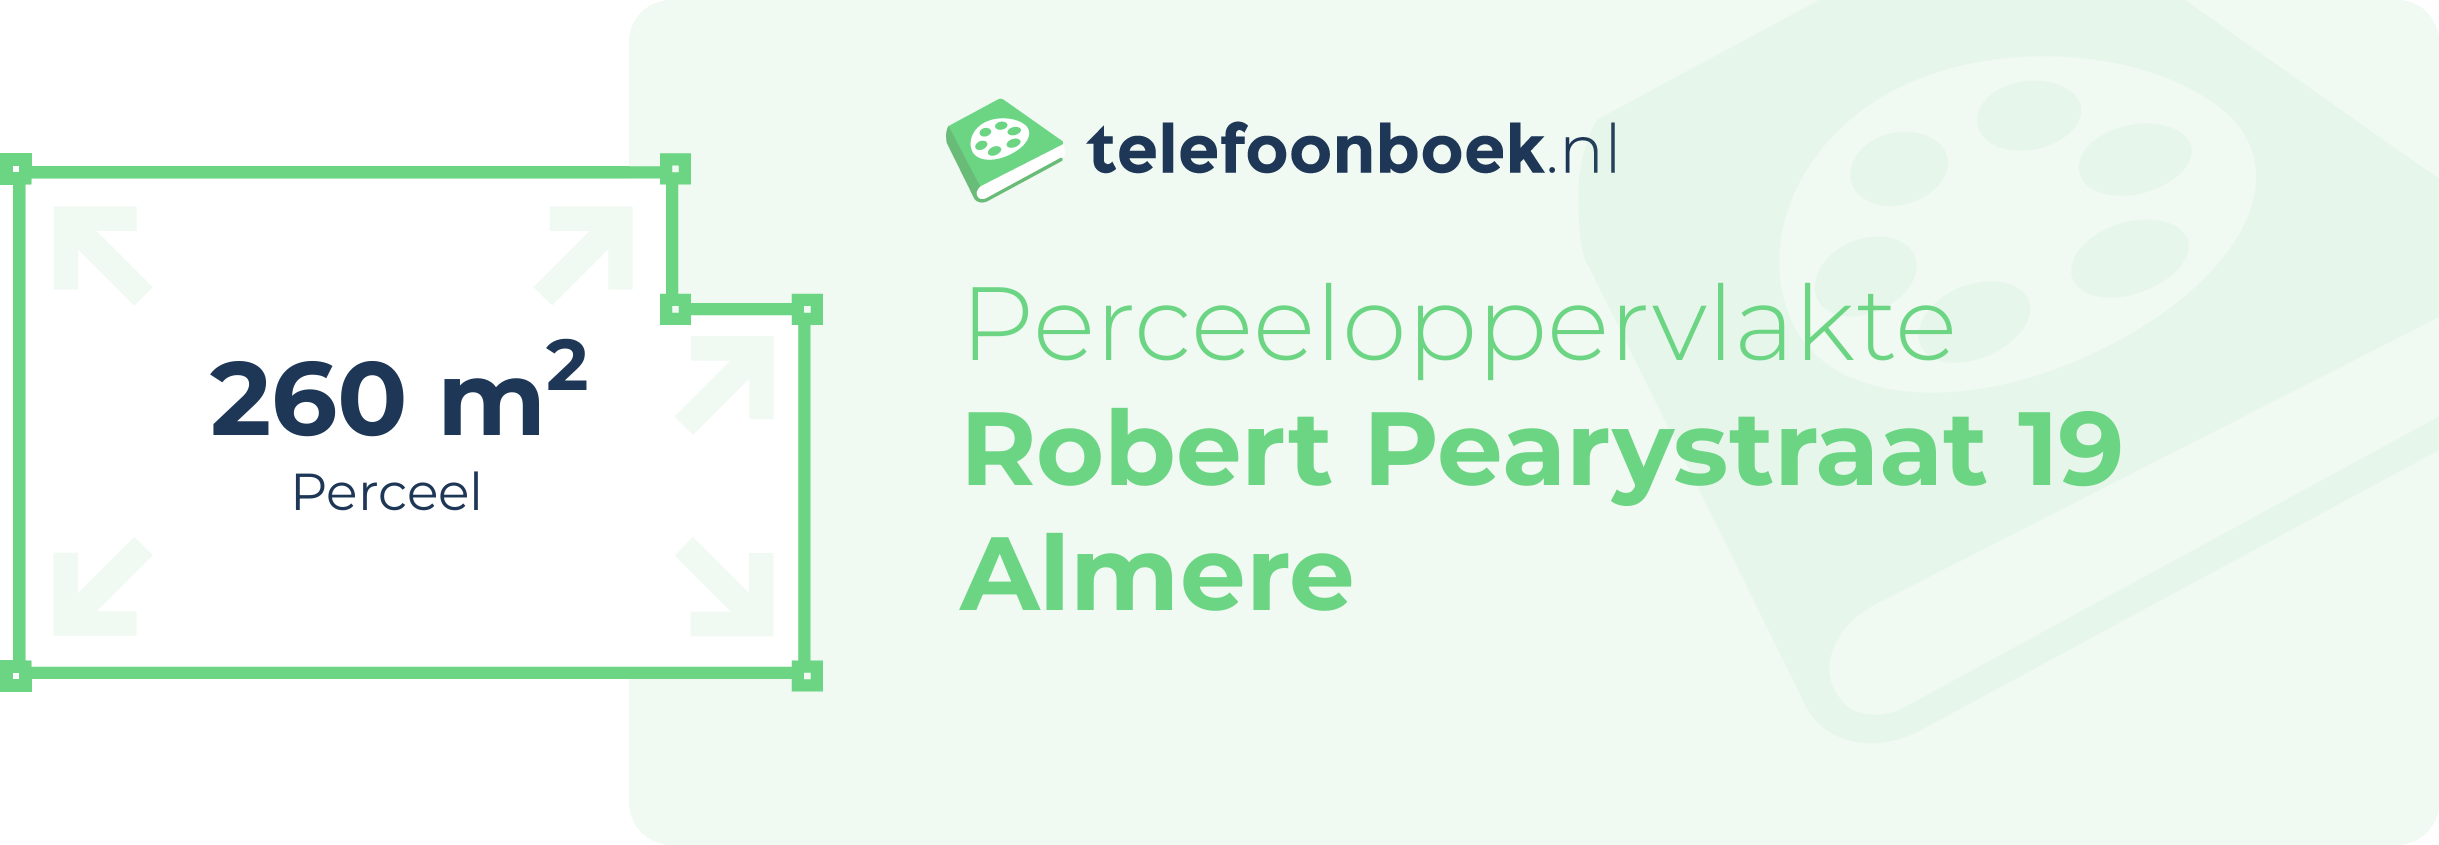 Perceeloppervlakte Robert Pearystraat 19 Almere